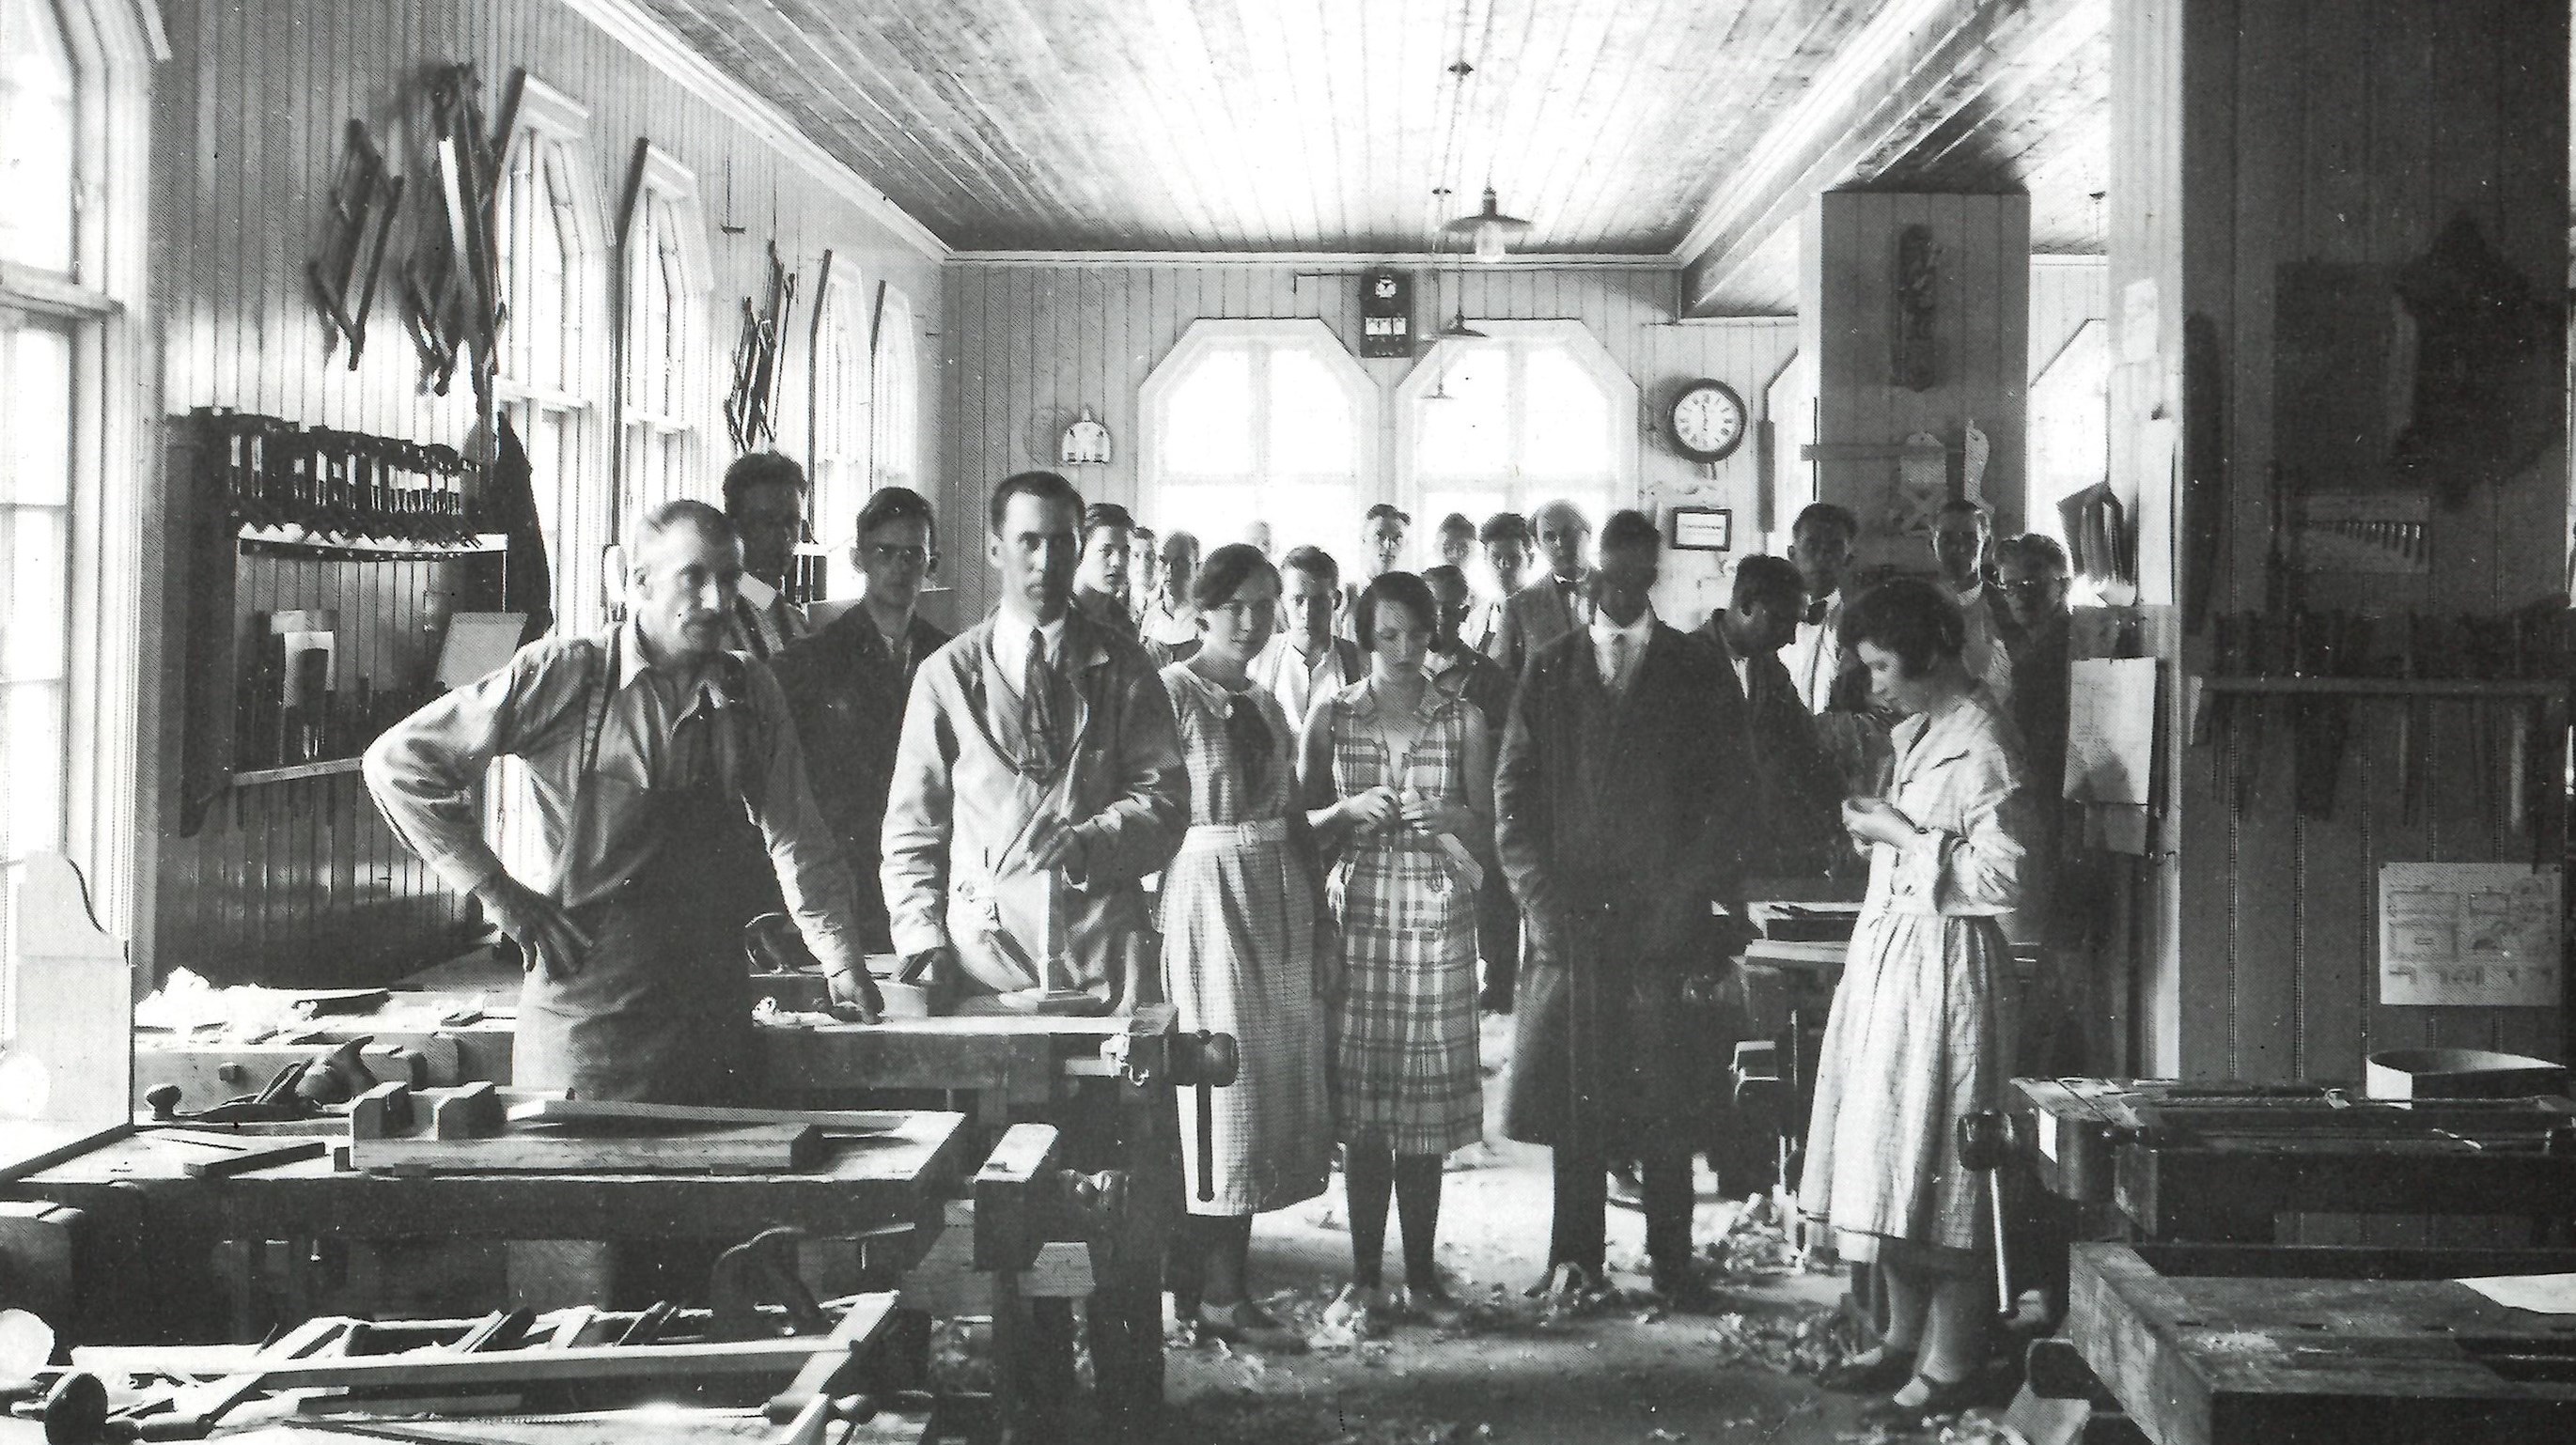 Foto taget omkring 1930-tal av slöjdlärarutbildning i Källnääs 